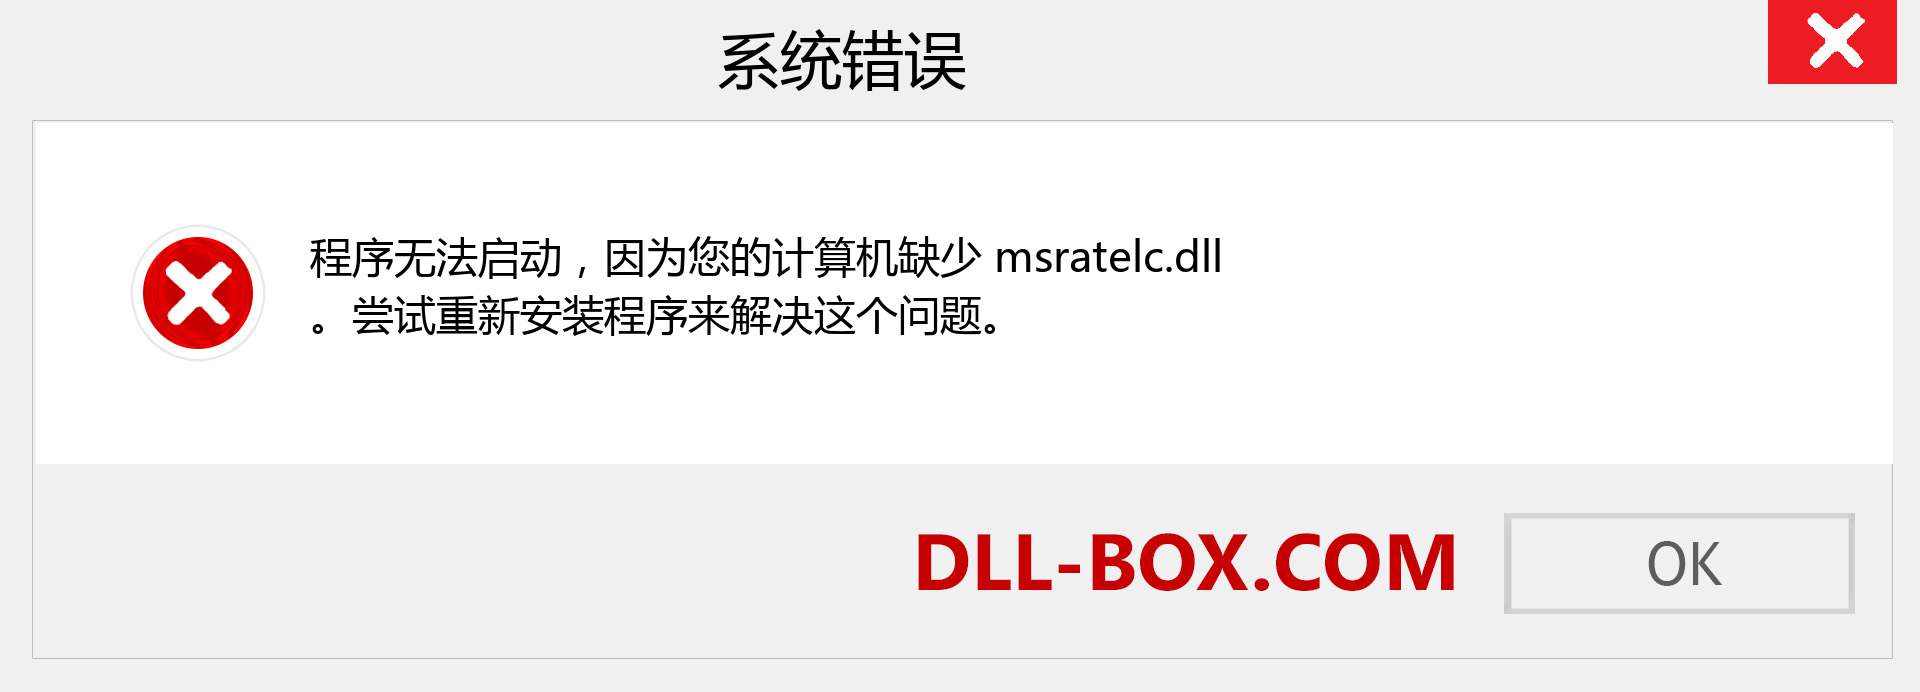 msratelc.dll 文件丢失？。 适用于 Windows 7、8、10 的下载 - 修复 Windows、照片、图像上的 msratelc dll 丢失错误